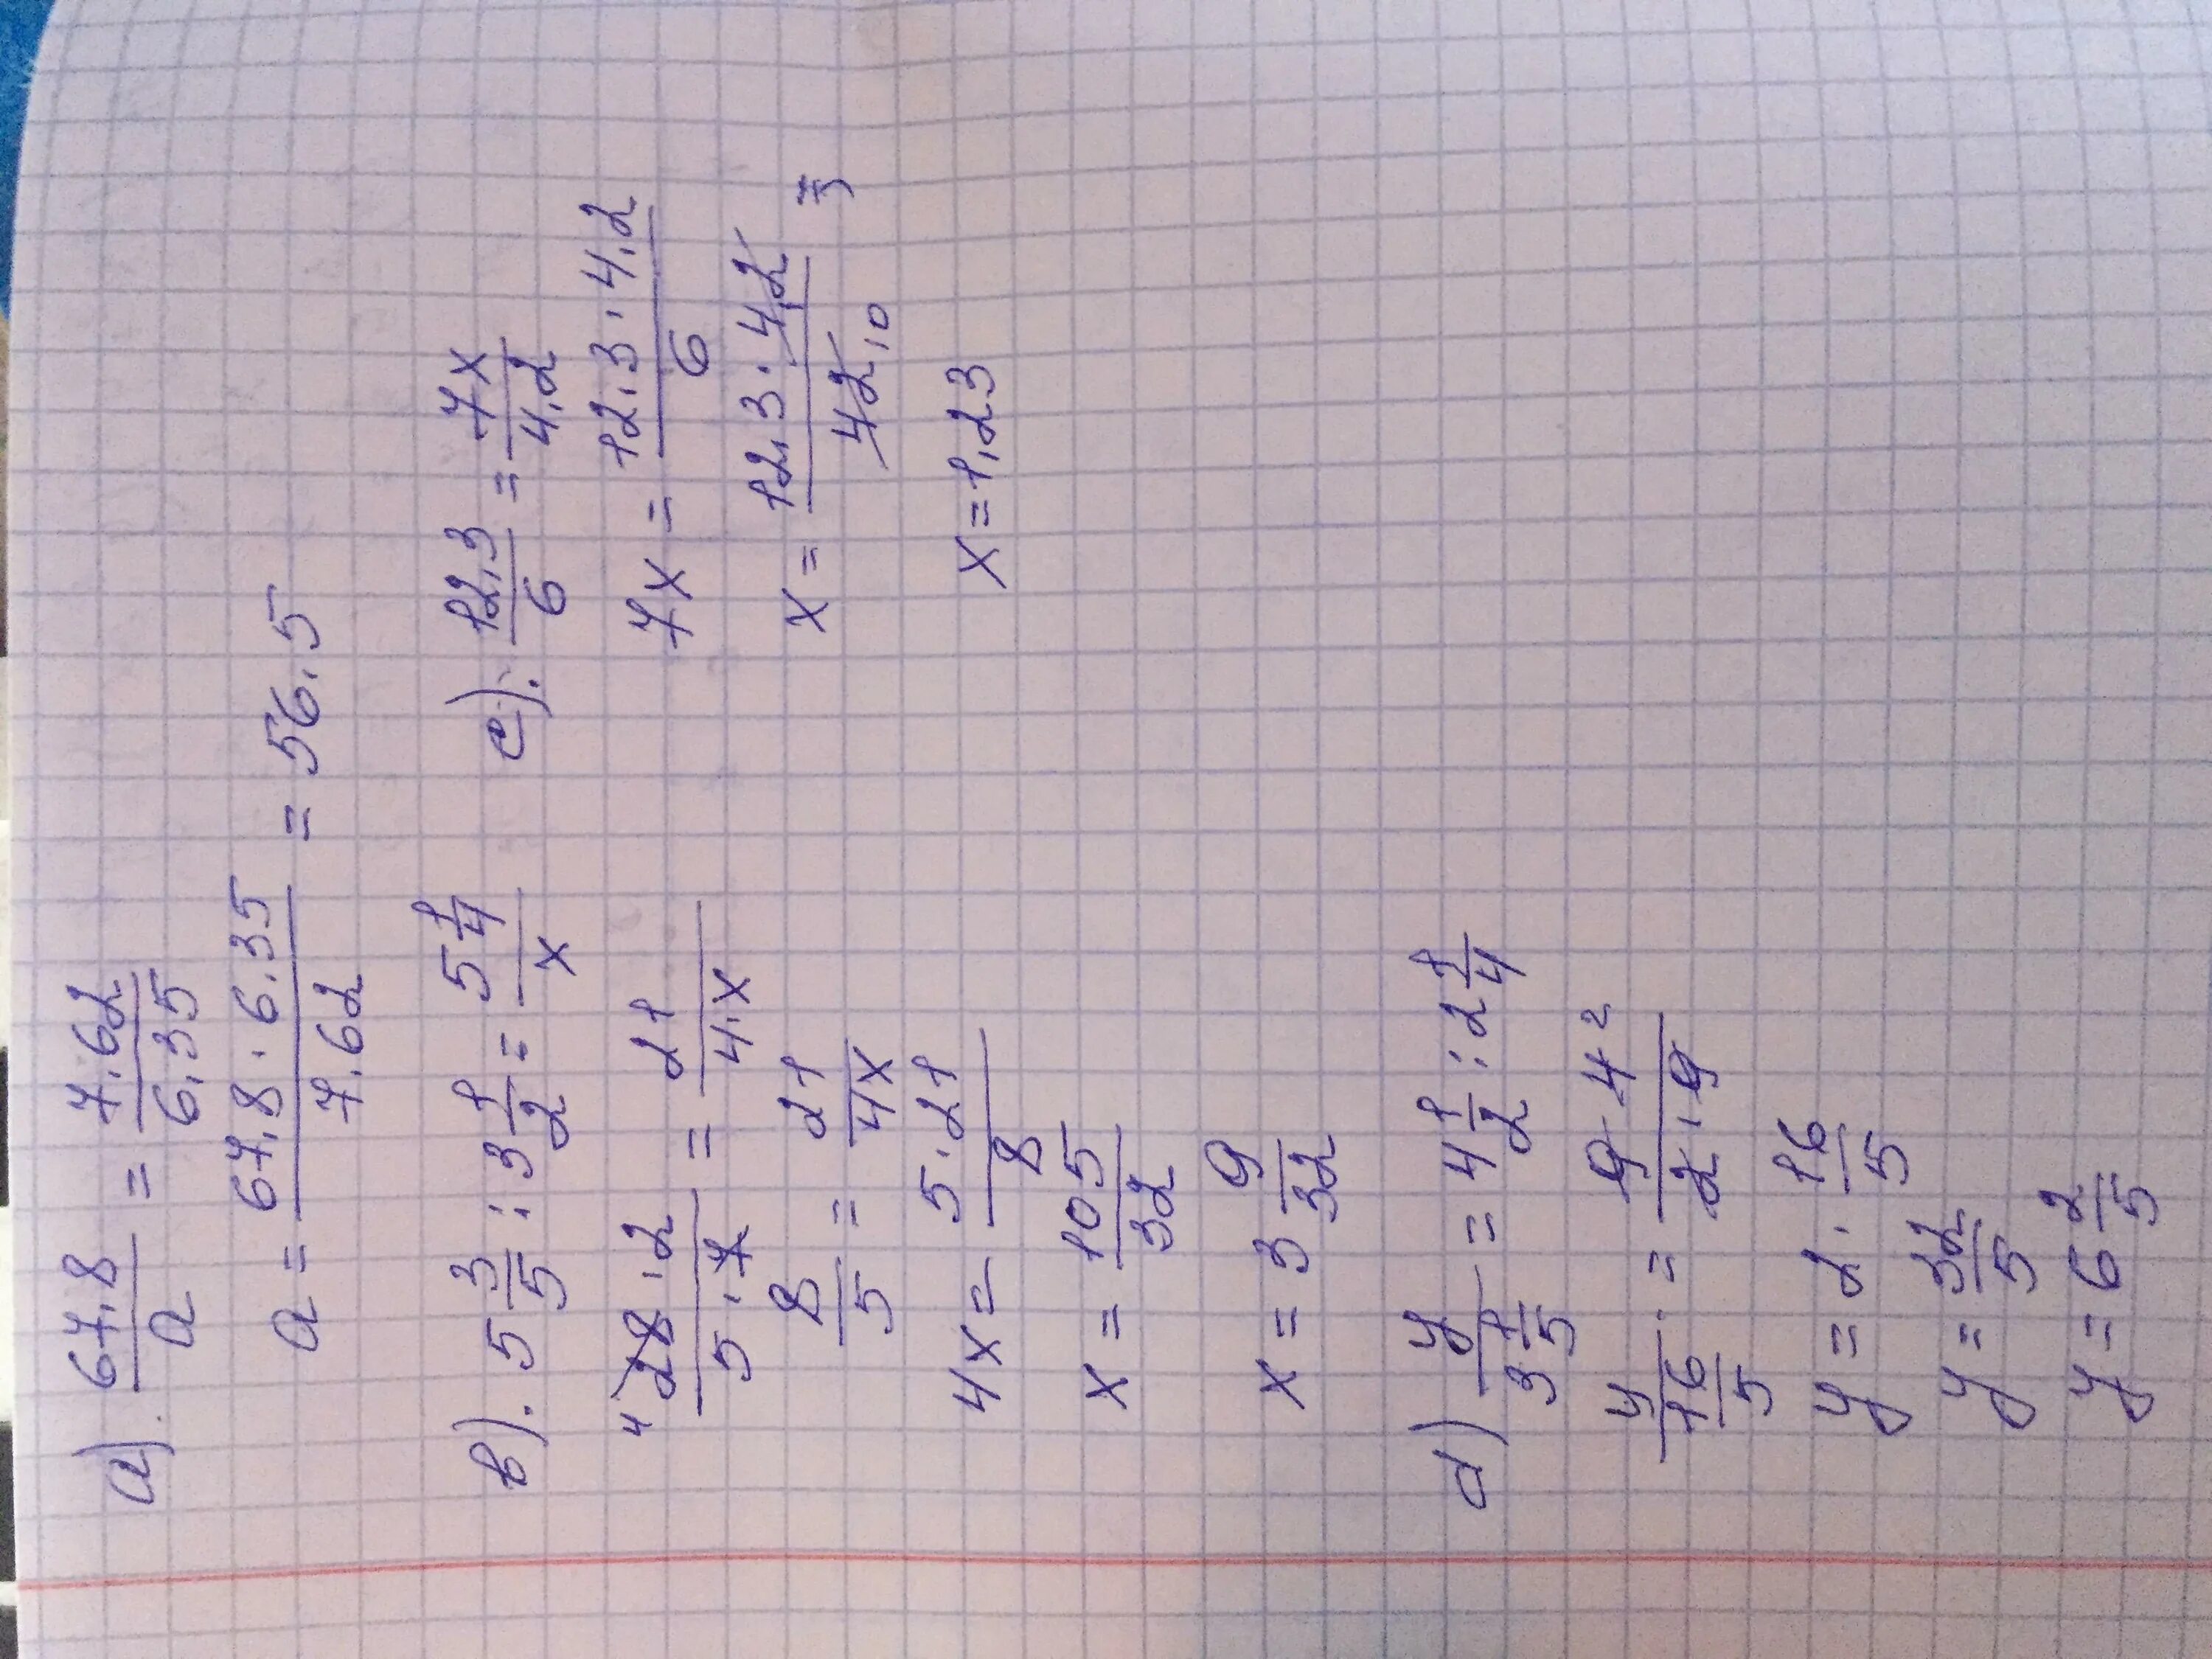 1 3 11 2 2 21 решение. 67 8 A 7.62/6.35. 67 8 А 7.62 6.35 решение. 7х+2,4=34,6. Y:51,6=11,2:34,4.